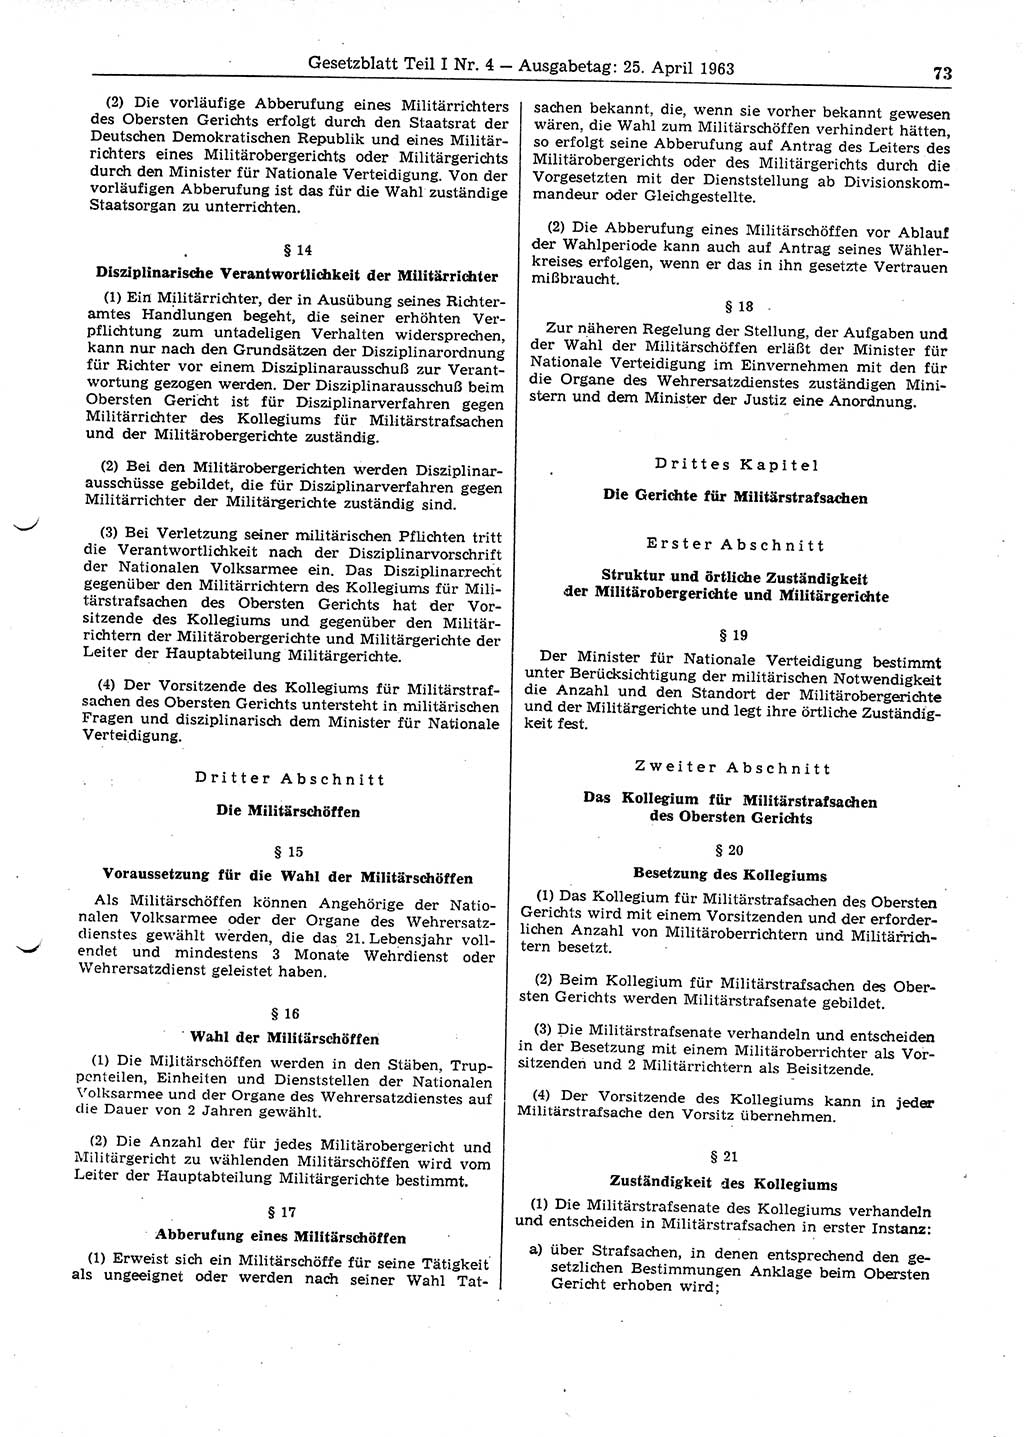 Gesetzblatt (GBl.) der Deutschen Demokratischen Republik (DDR) Teil Ⅰ 1963, Seite 73 (GBl. DDR Ⅰ 1963, S. 73)